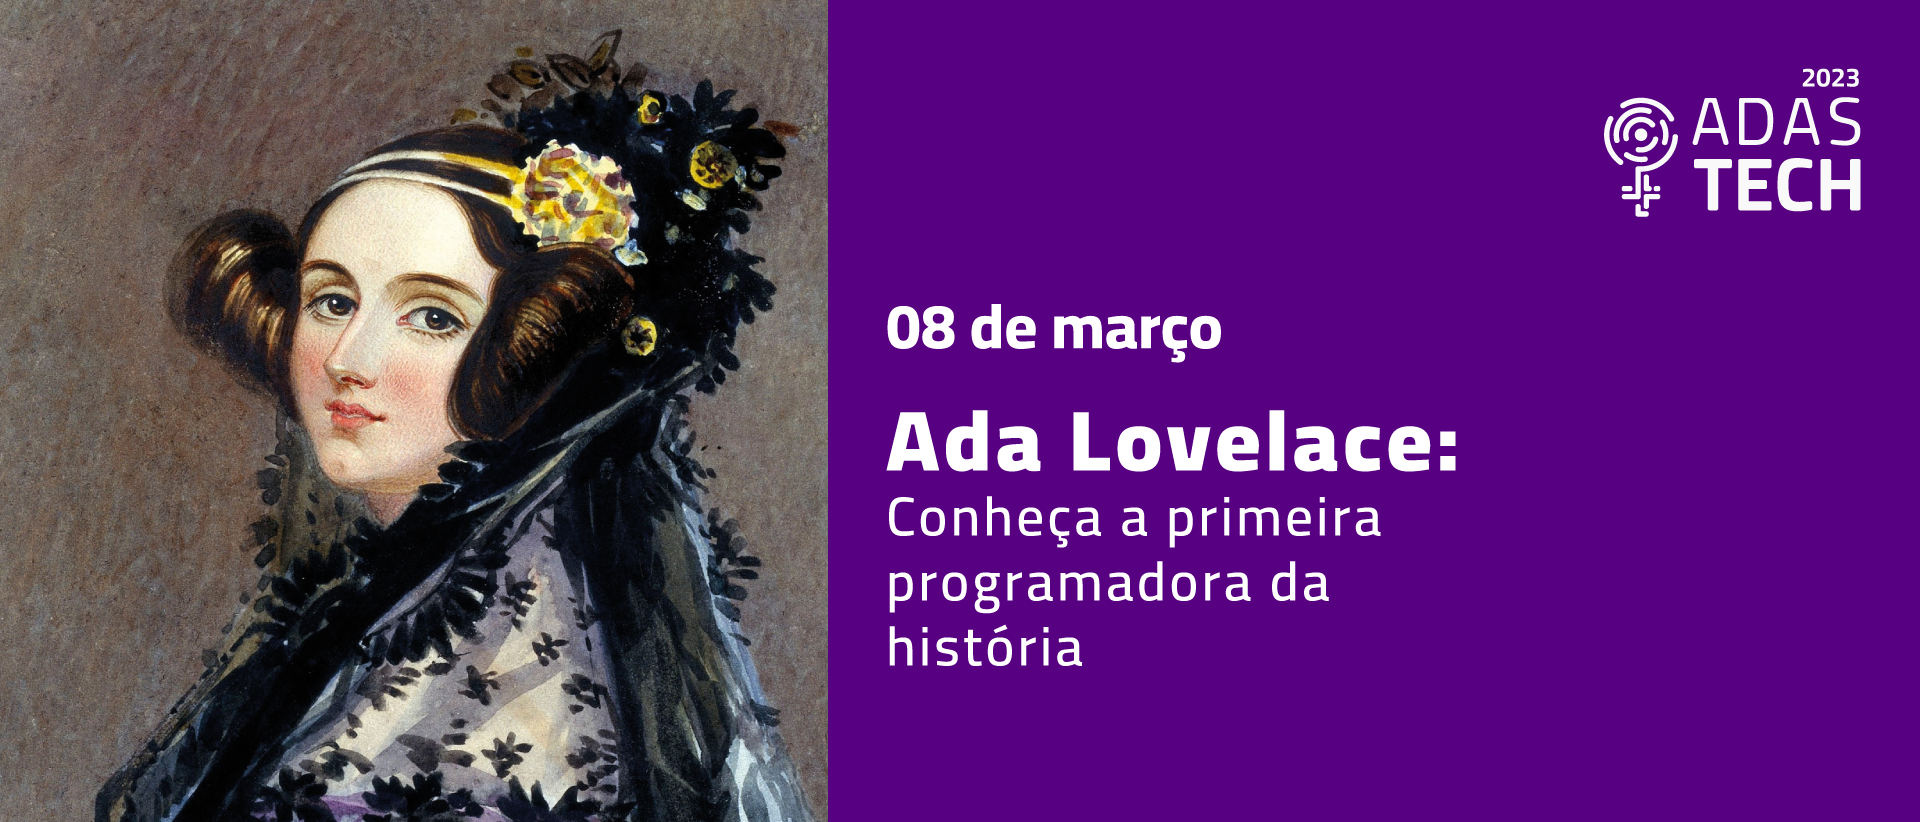 Ada Lovelace: conheça a primeira programadora da história